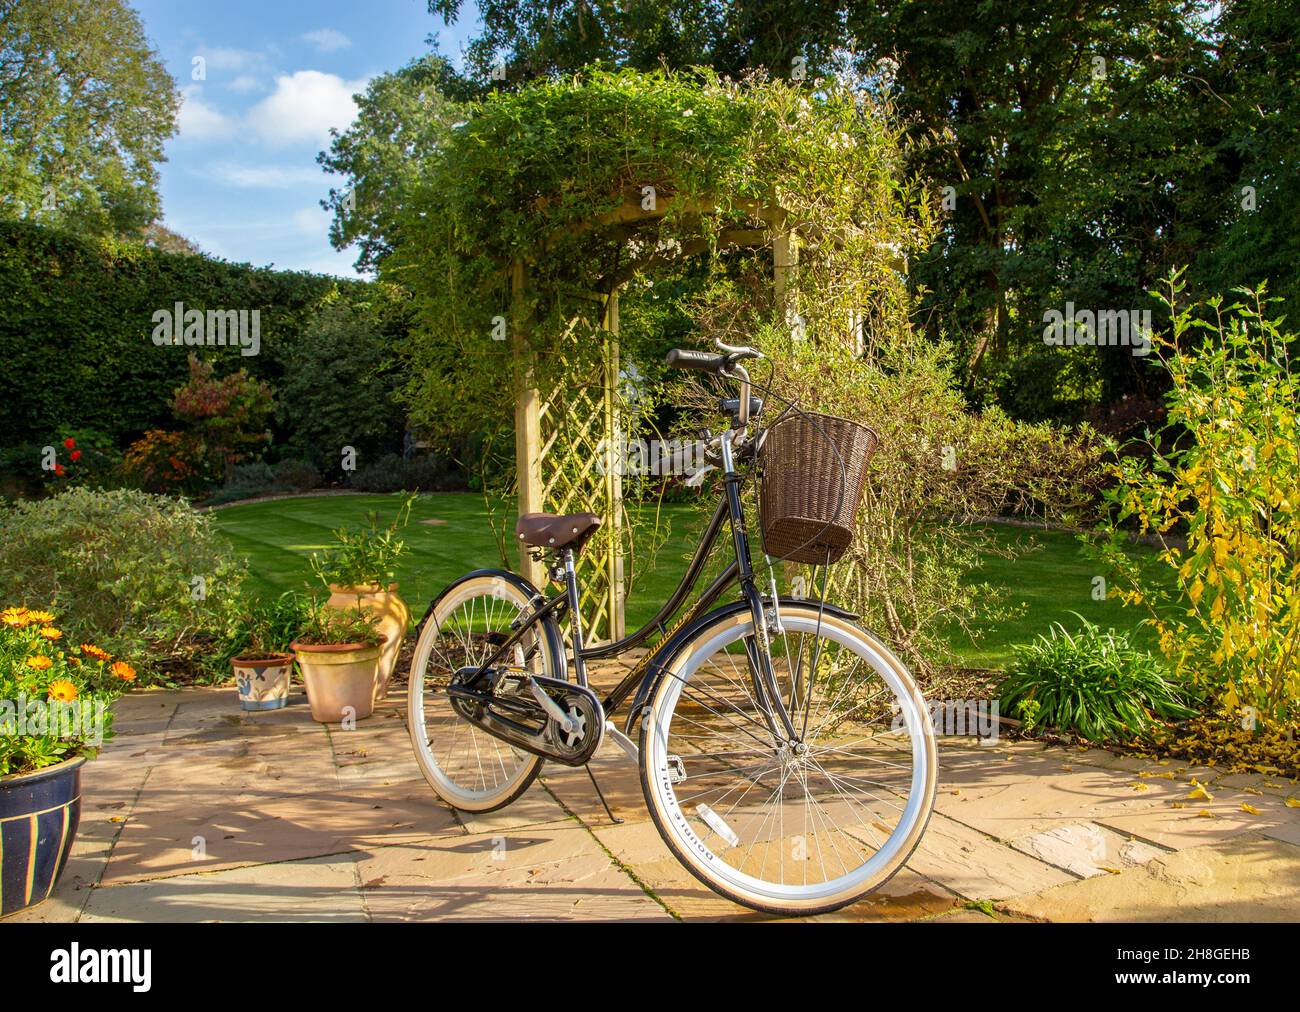 Ammaco « Hollande » femmes vélo de style hollandais dans un joli jardin à côté d'une arche, avec panier devant le guidon. Banque D'Images